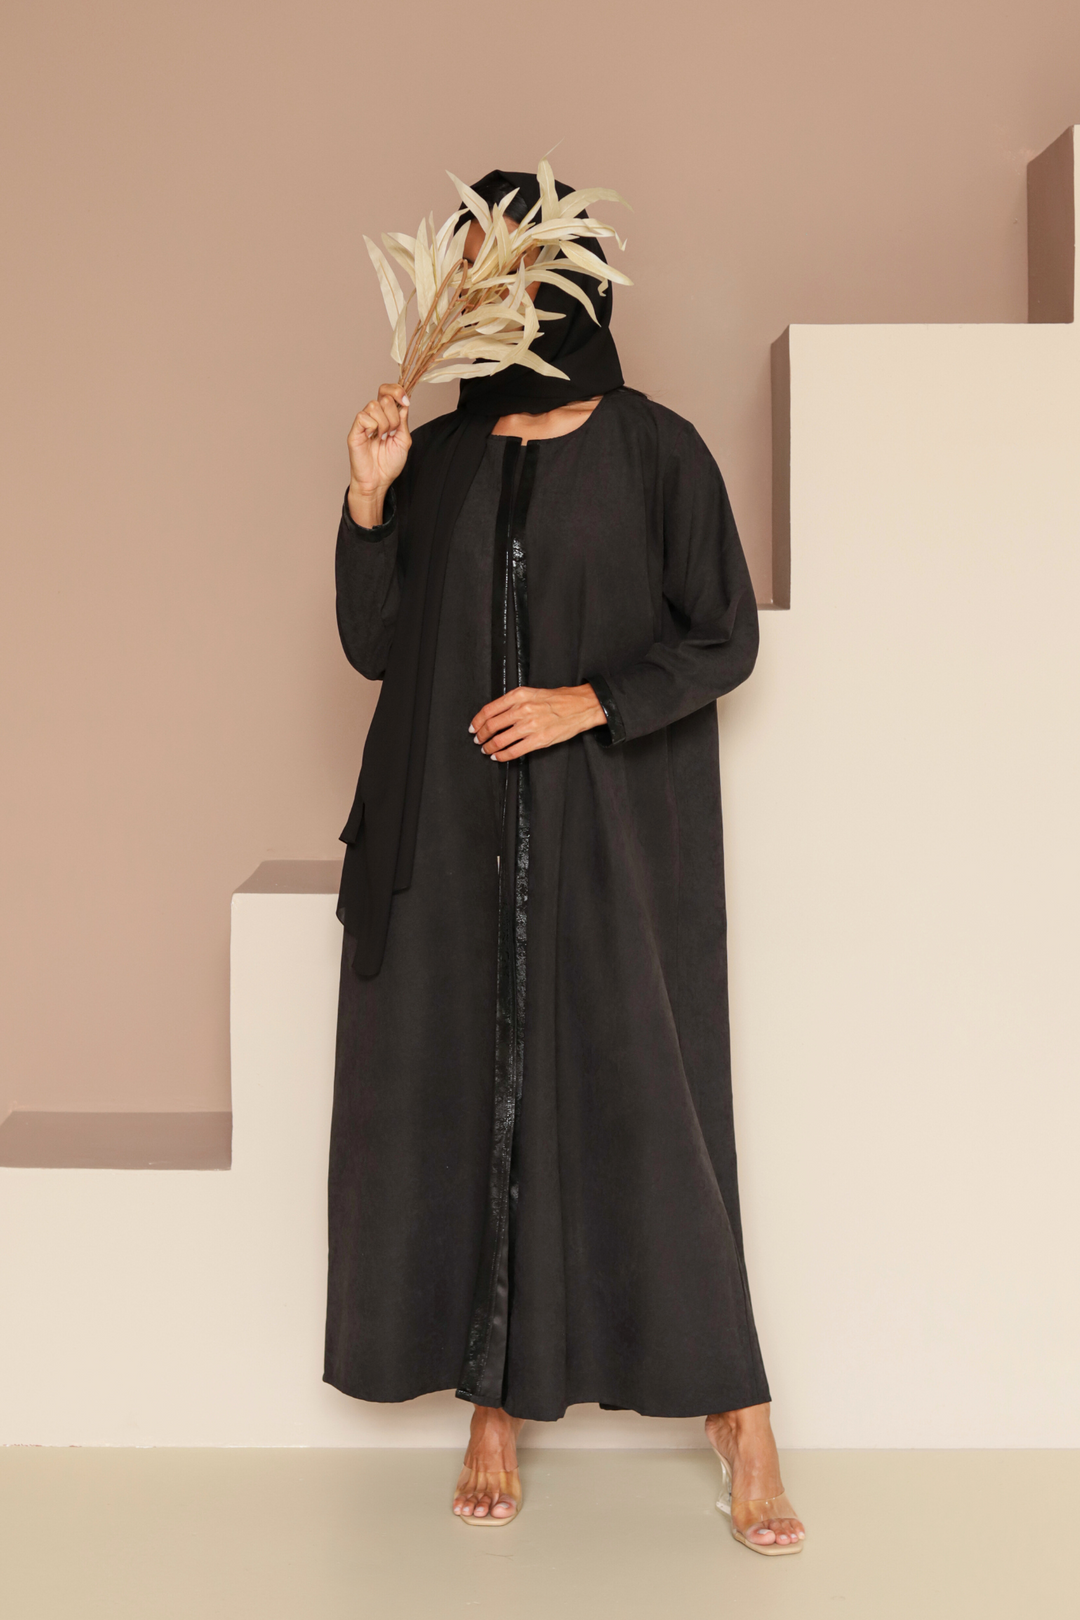 Basic Leather (Black Abaya) - Ready to Wear